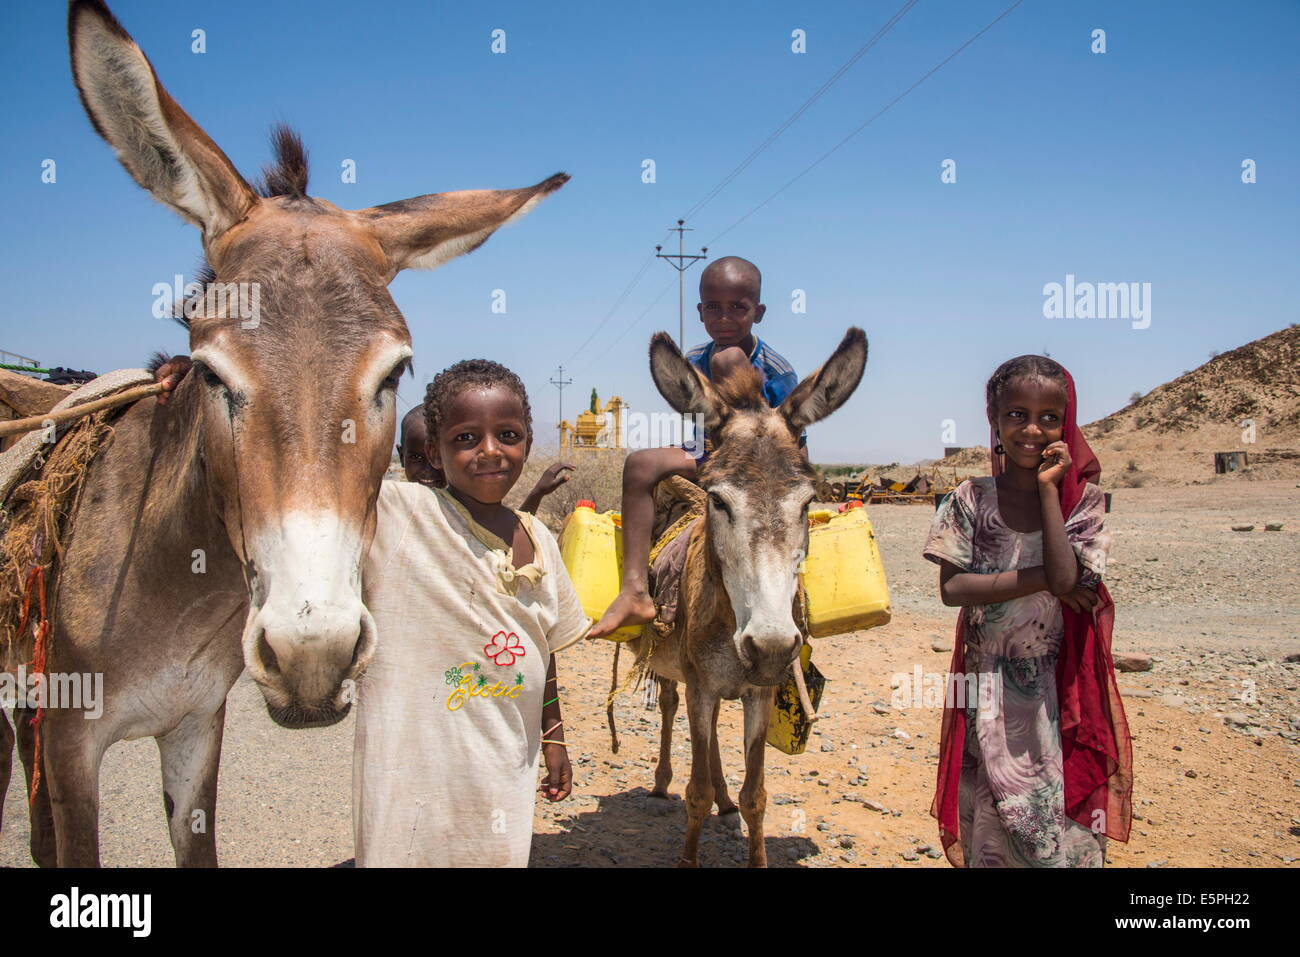 Heureux les jeunes enfants bédouins dans les basses terres de l'Erythrée, l'Afrique Banque D'Images